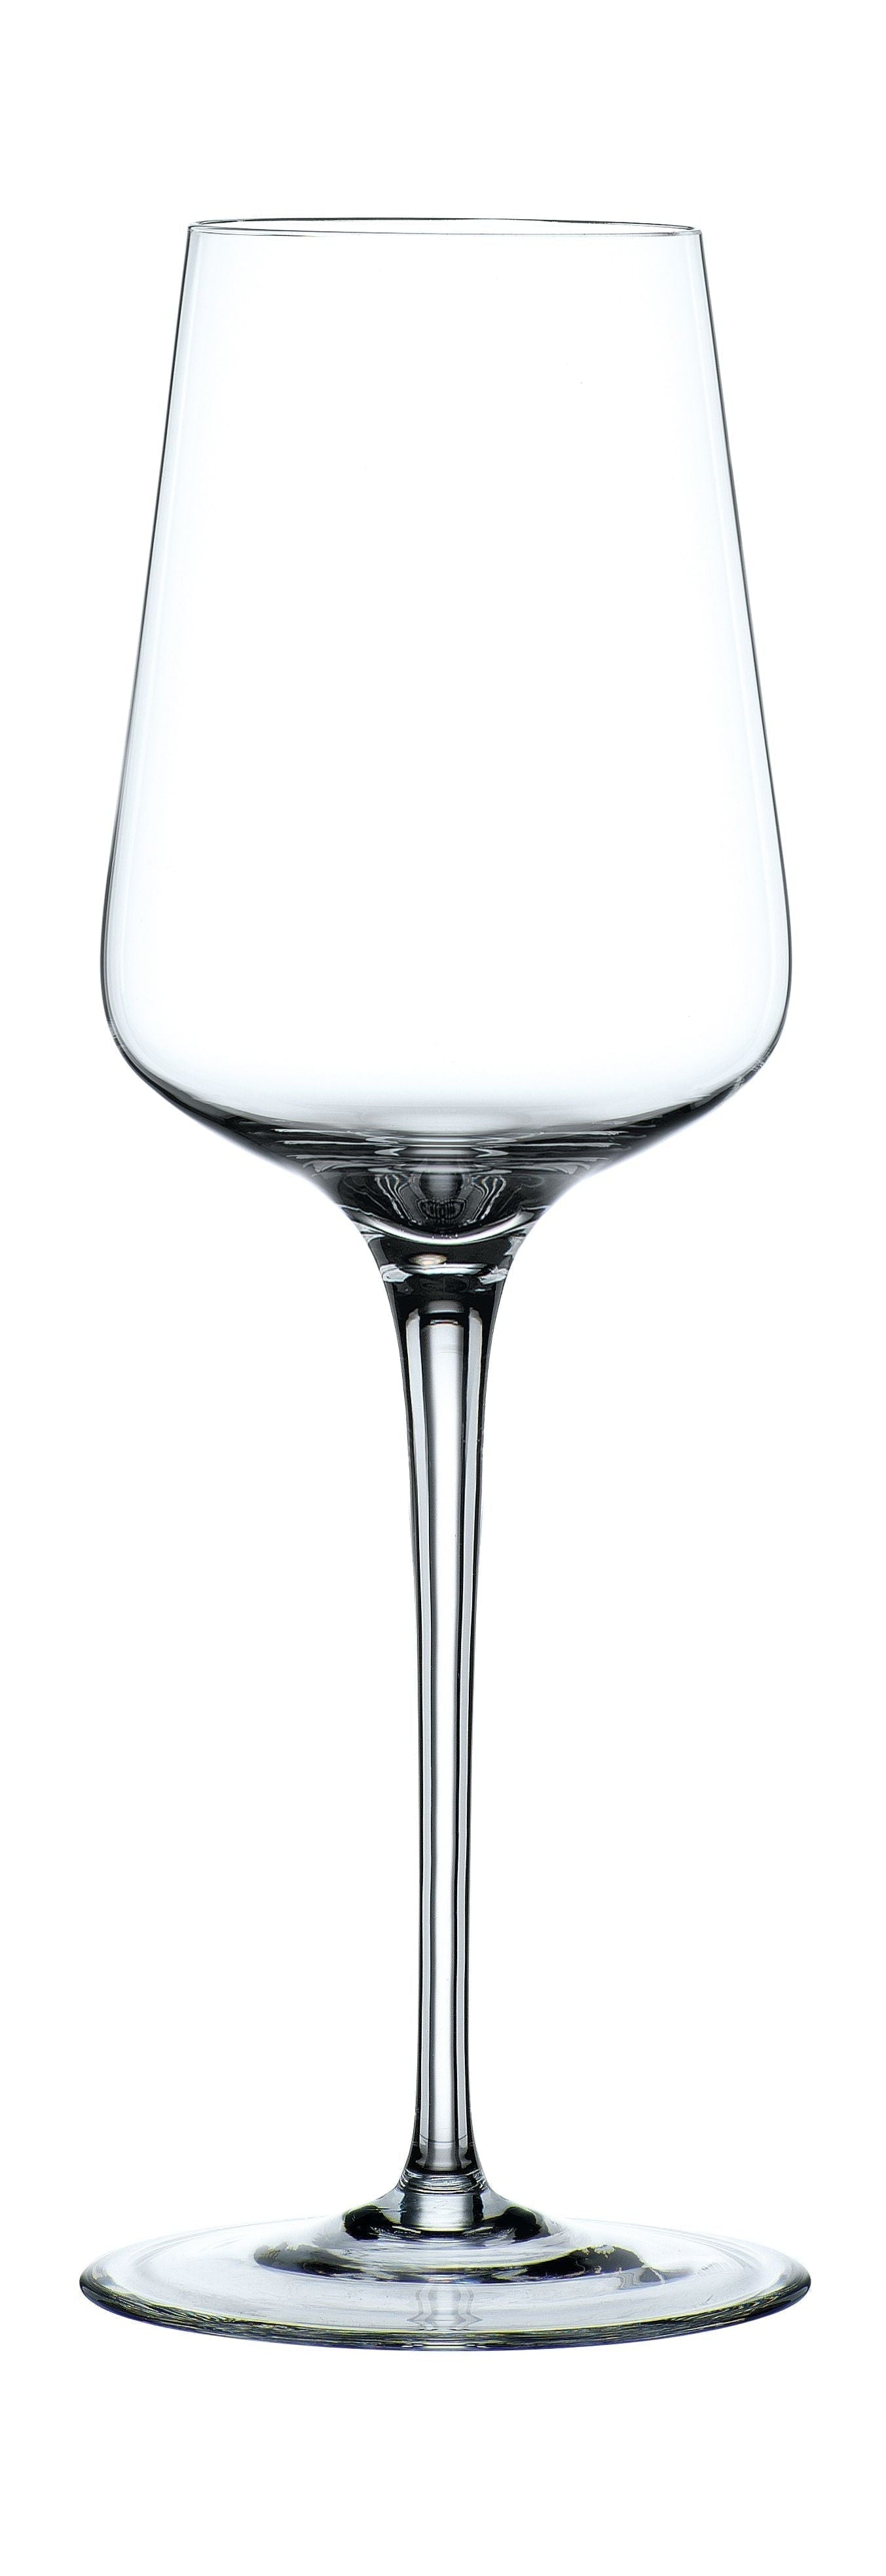 Nachtmann Vi nova wit wijnglas 380 ml, set van 4